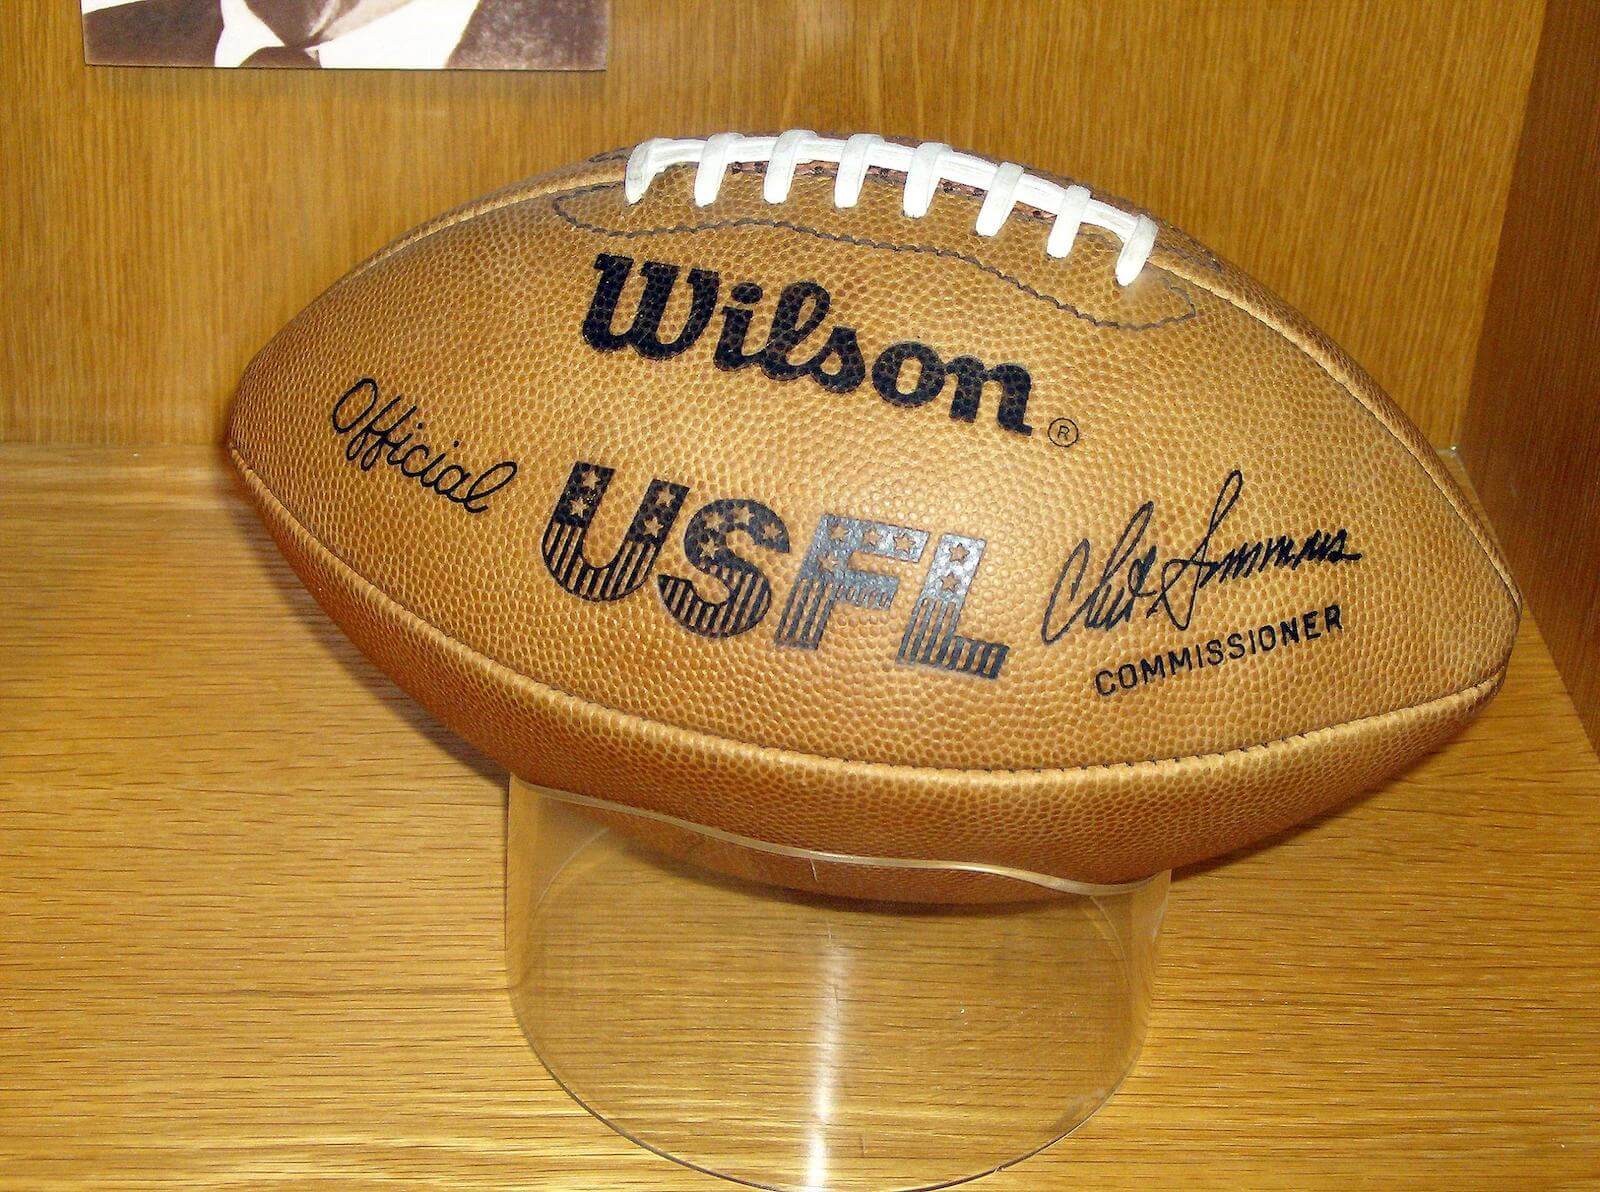 USFL ball